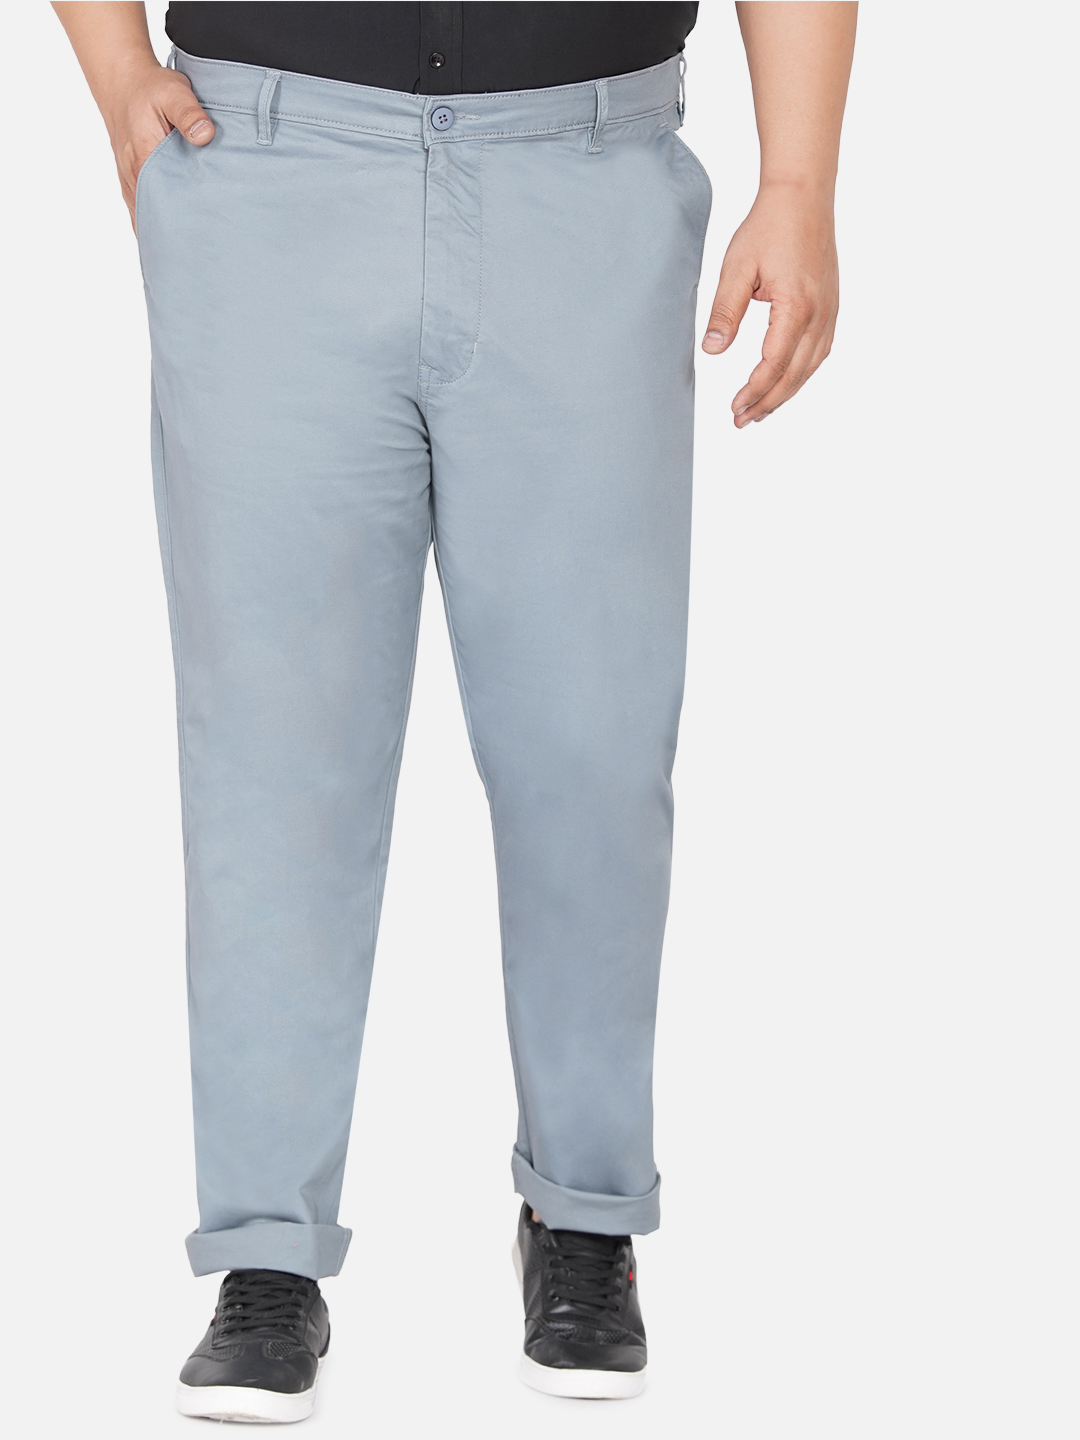 bottomwear/trousers/JPTR2195T/jptr2195t-1.jpg